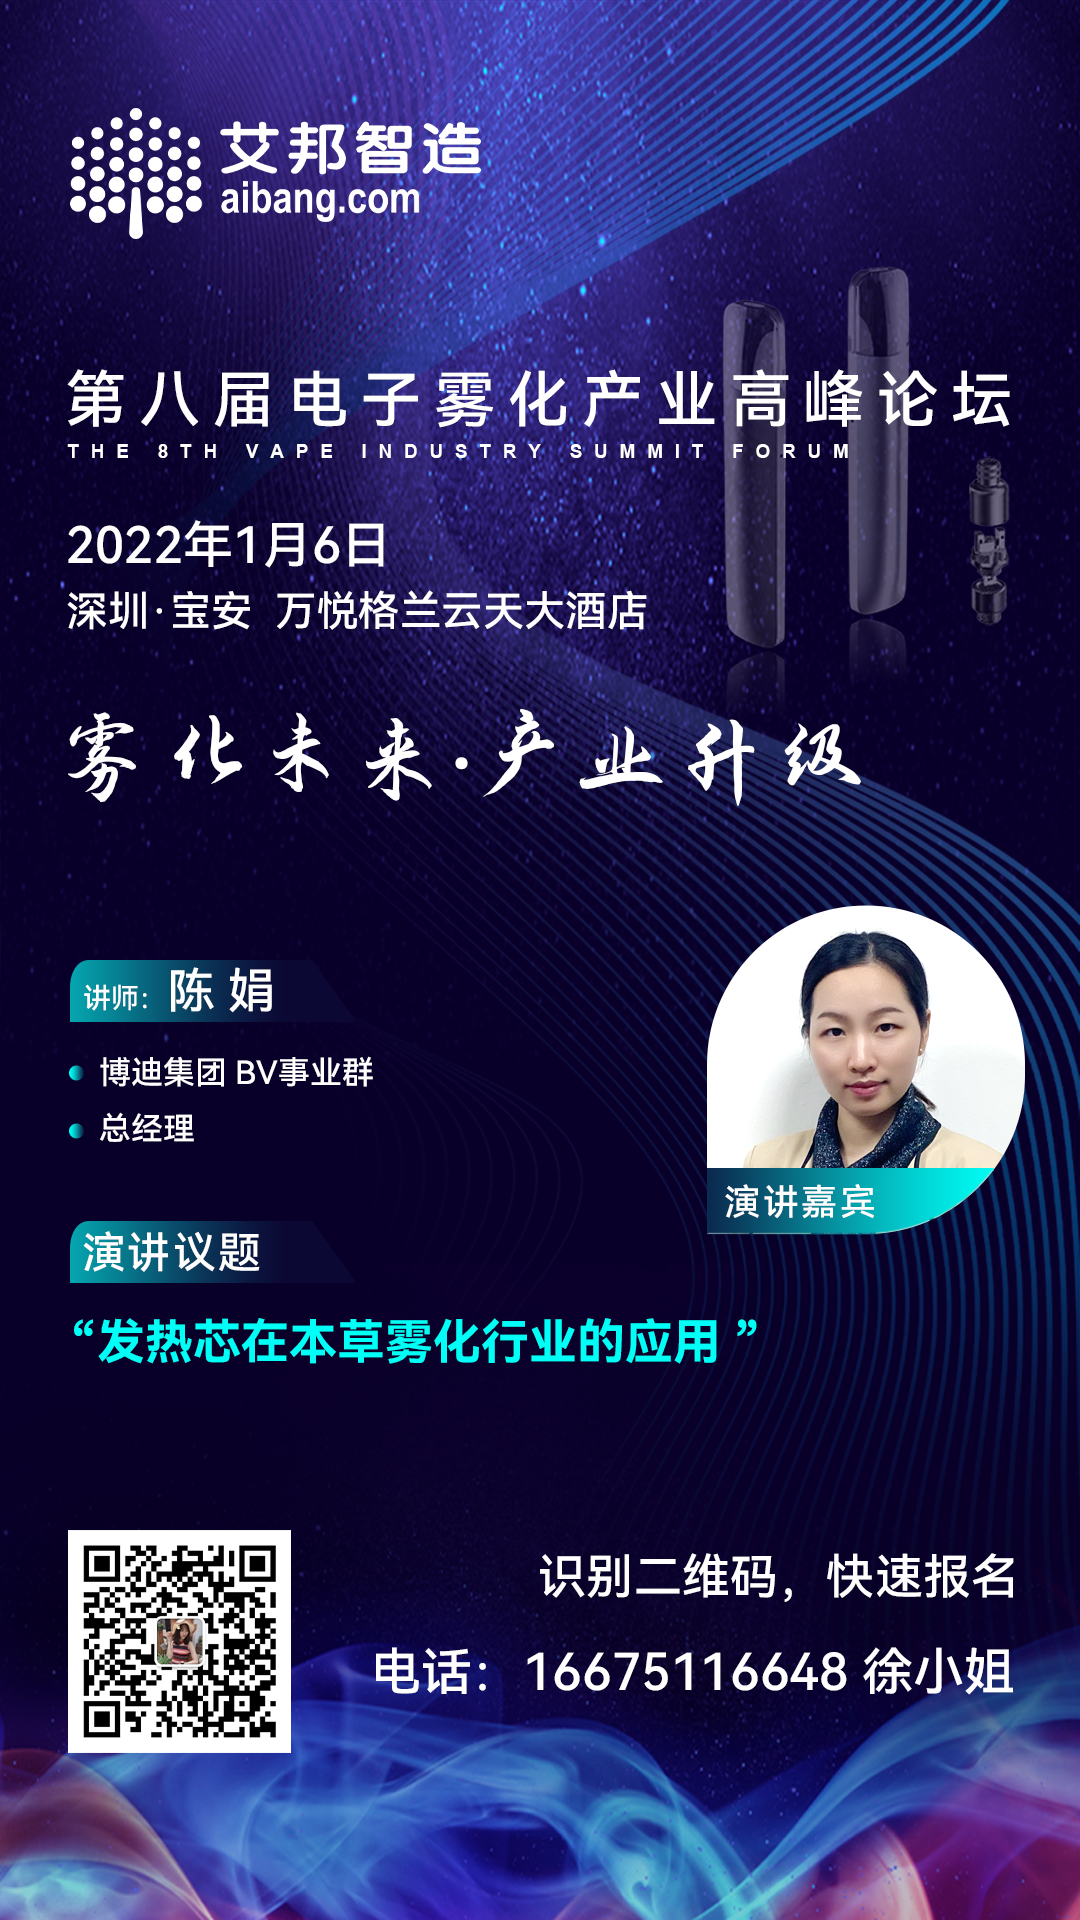 博迪集团将出席第八届电子雾化产业高峰论坛并做主题演讲（1月6日~深圳）